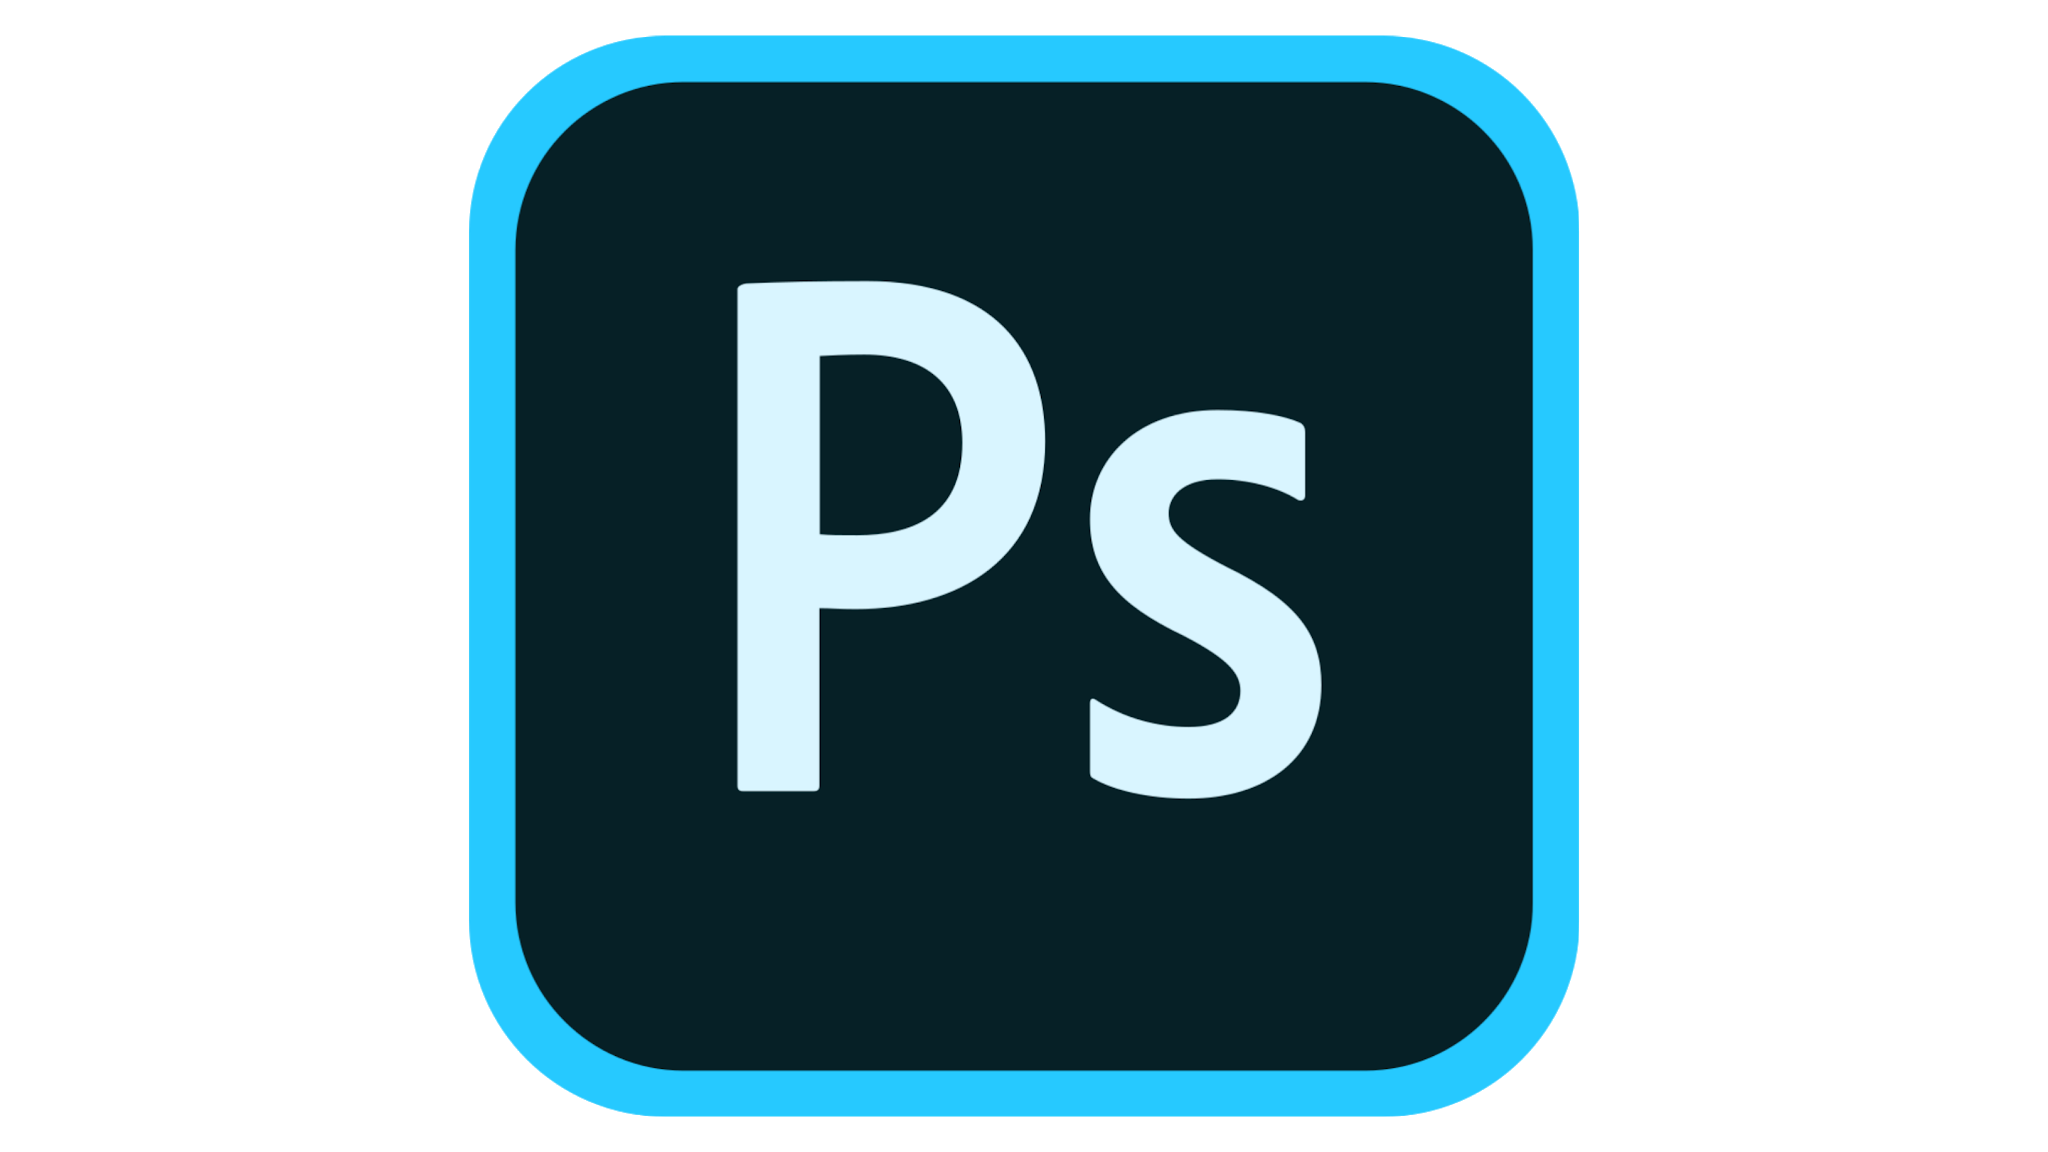 Картинки адоб фотошоп. Значок фотошопа. Adobe Photoshop логотип. Значки для фотошопа на прозрачном фоне. Photoshop логотип PNG.